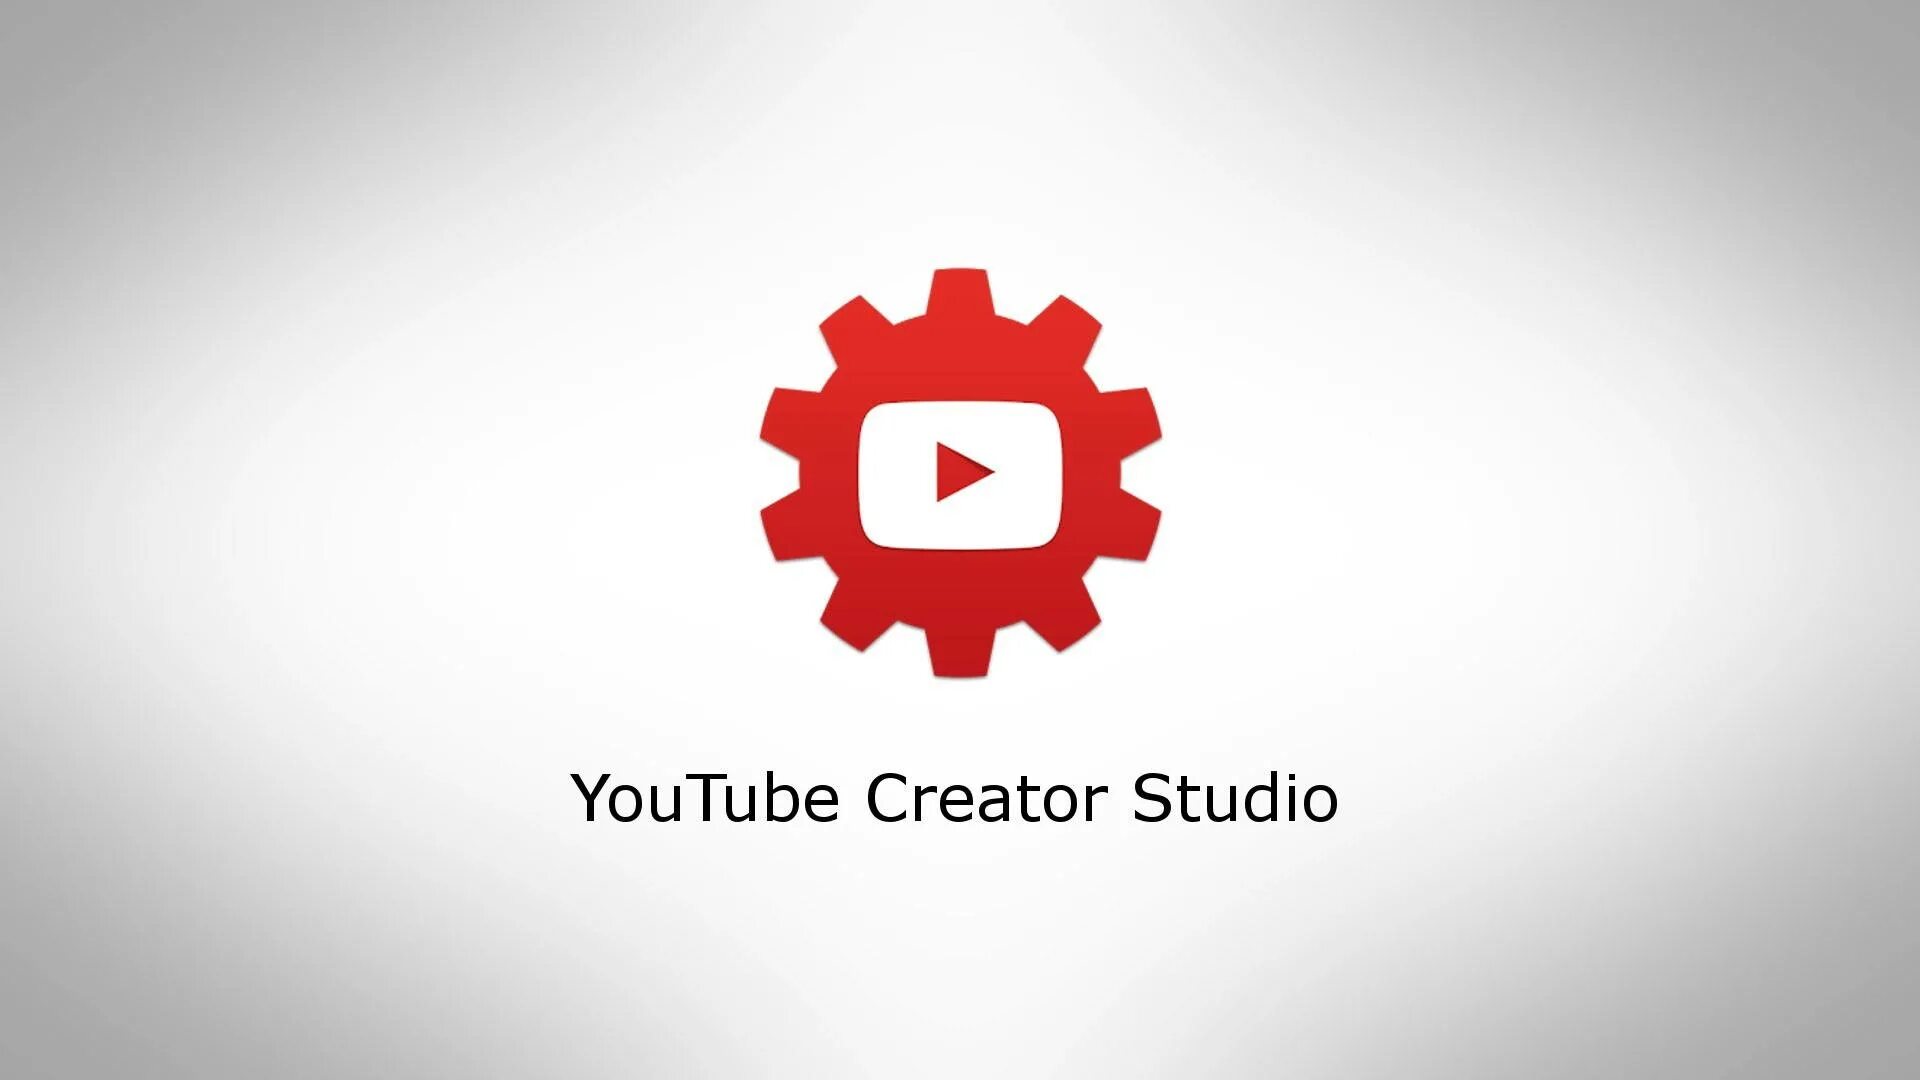 Ютуб студия войти. Youtube Studio. Ютуб студия. Youtube creator Studio. Творческая студия ютуб.